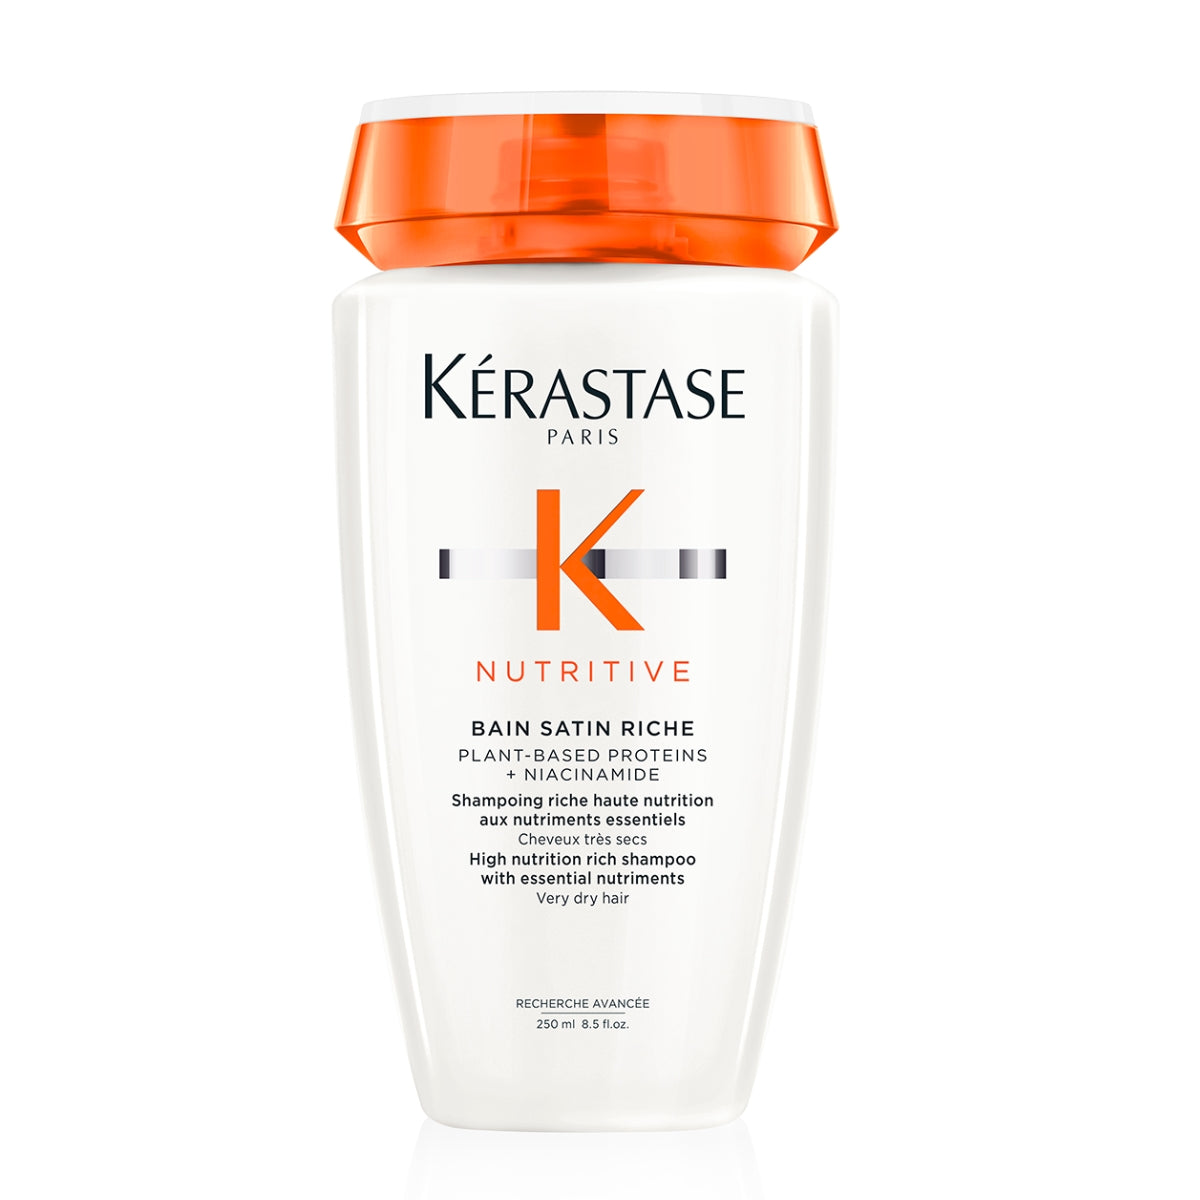 Kérastase Nutritive Bain Satin Riche High Nutrition Rich Shampoo With Niacinamide For Very Dry Hair